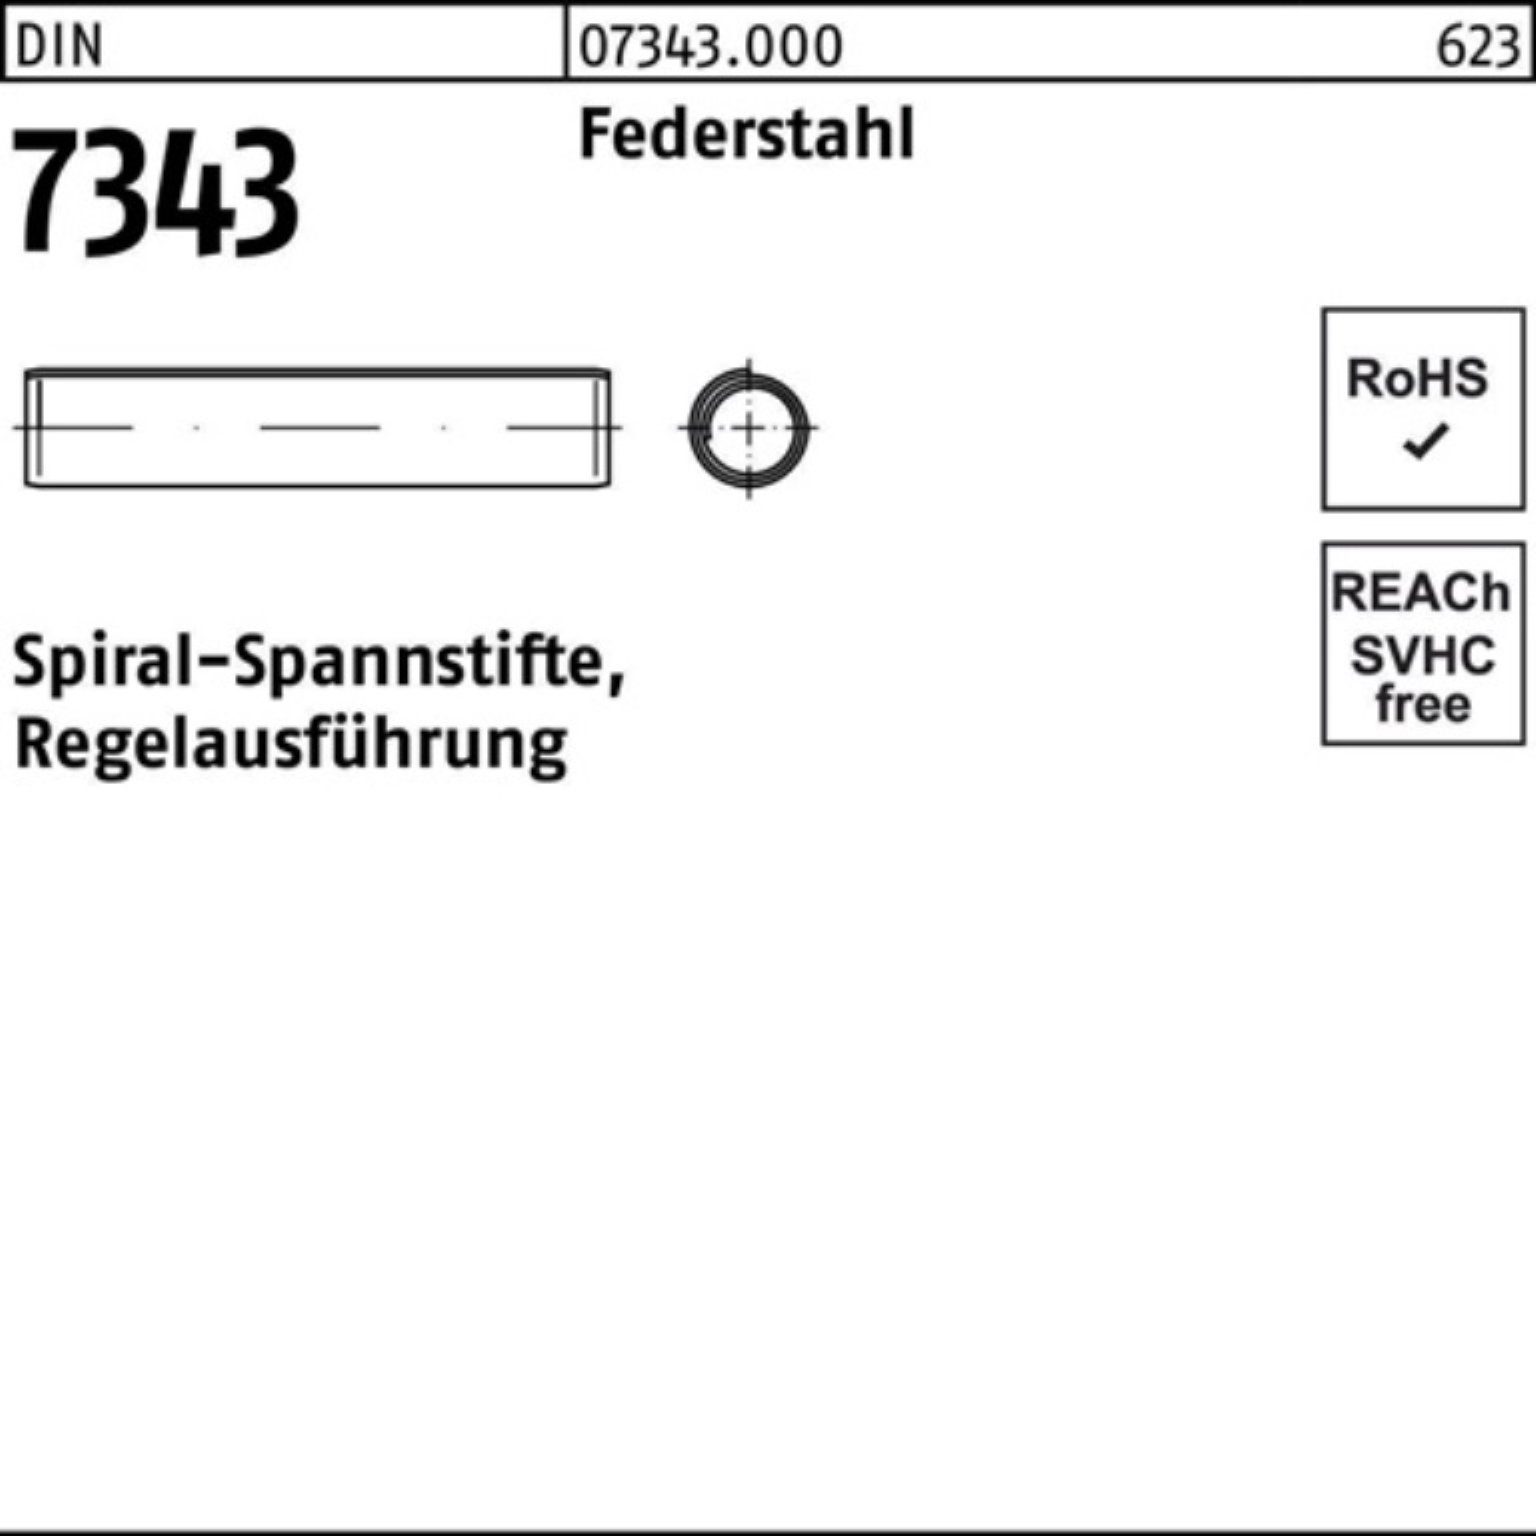 Reyher Spannstift 1000er Pack 12 7343/ISO 8750 DIN Rege 2,5x Federstahl Spiralspannstift